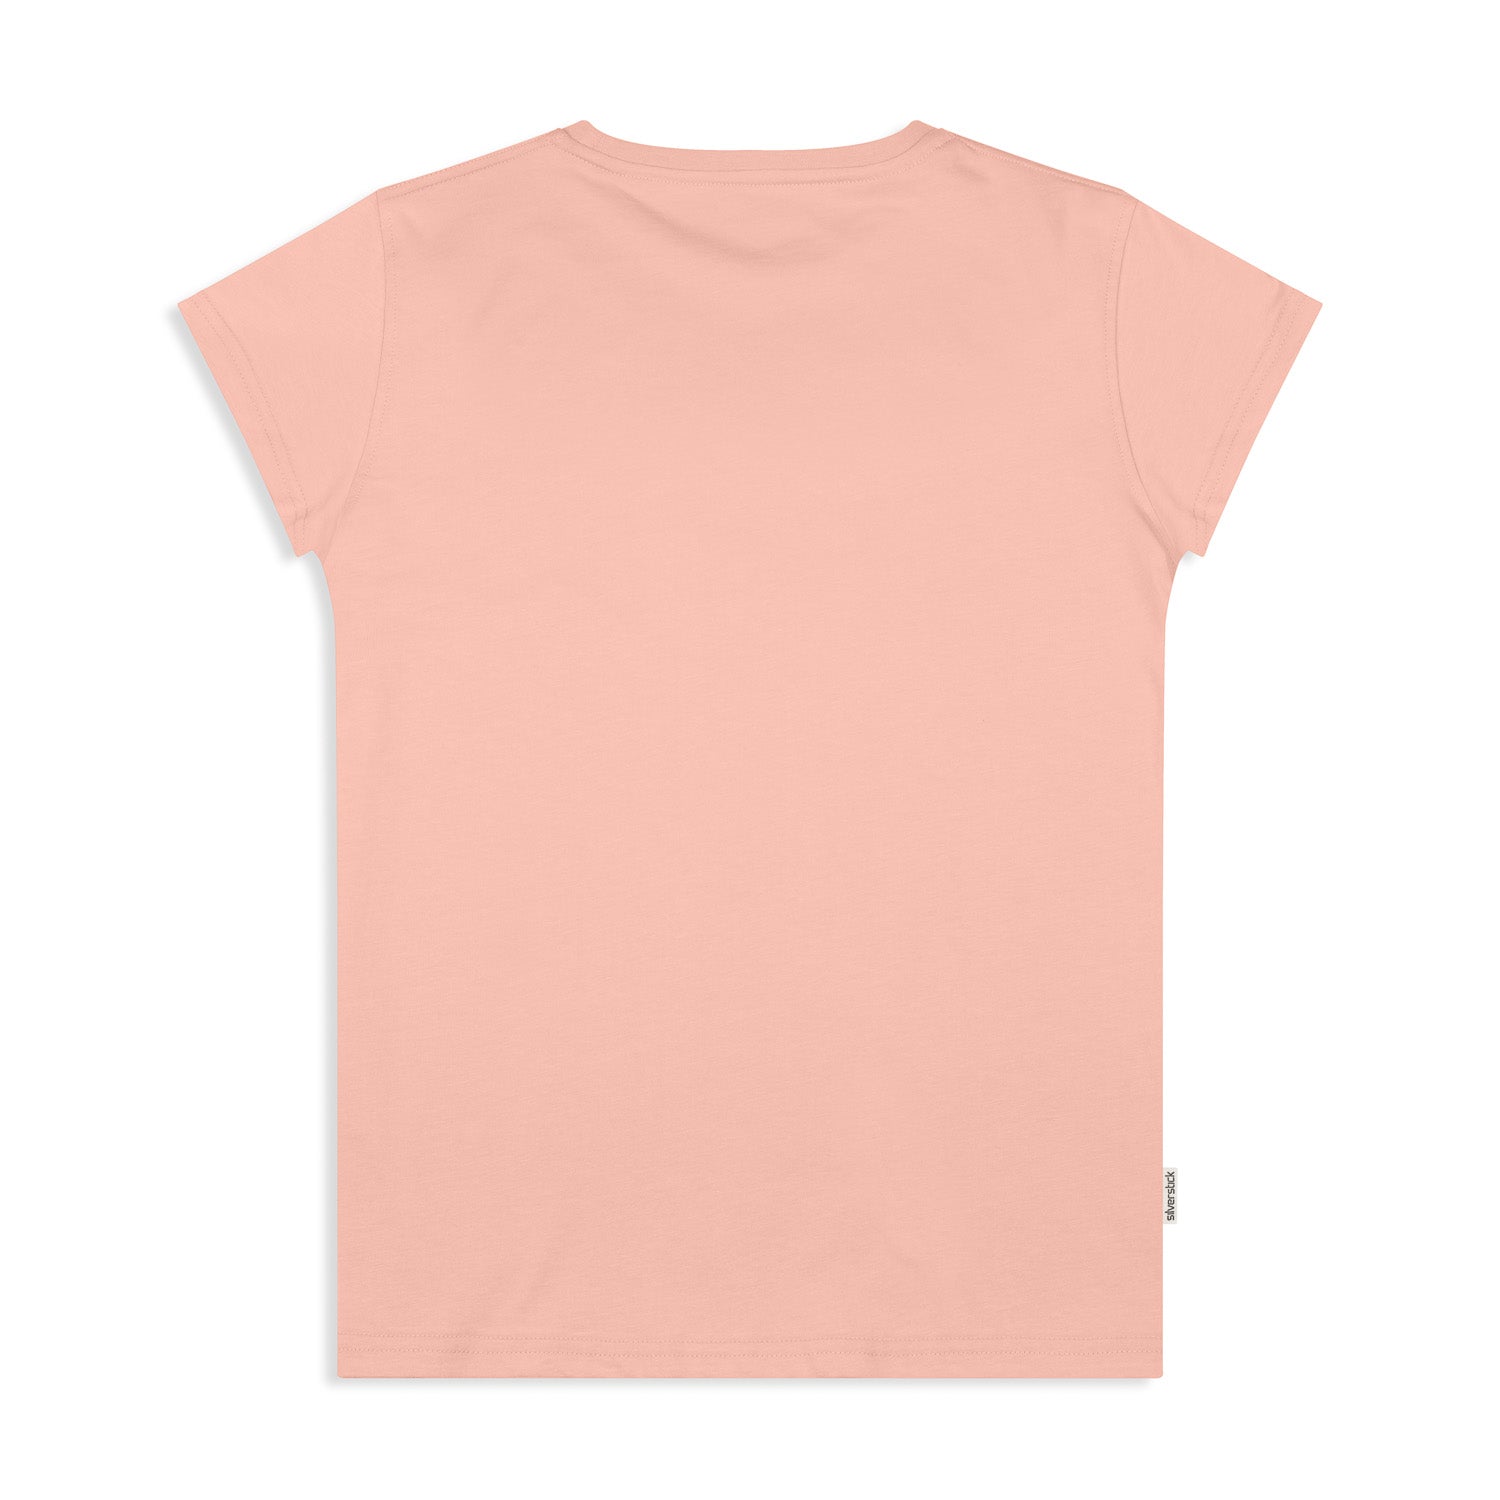 Silverstick Womens Organic Cotton T Shirt Adventure Antique Pink